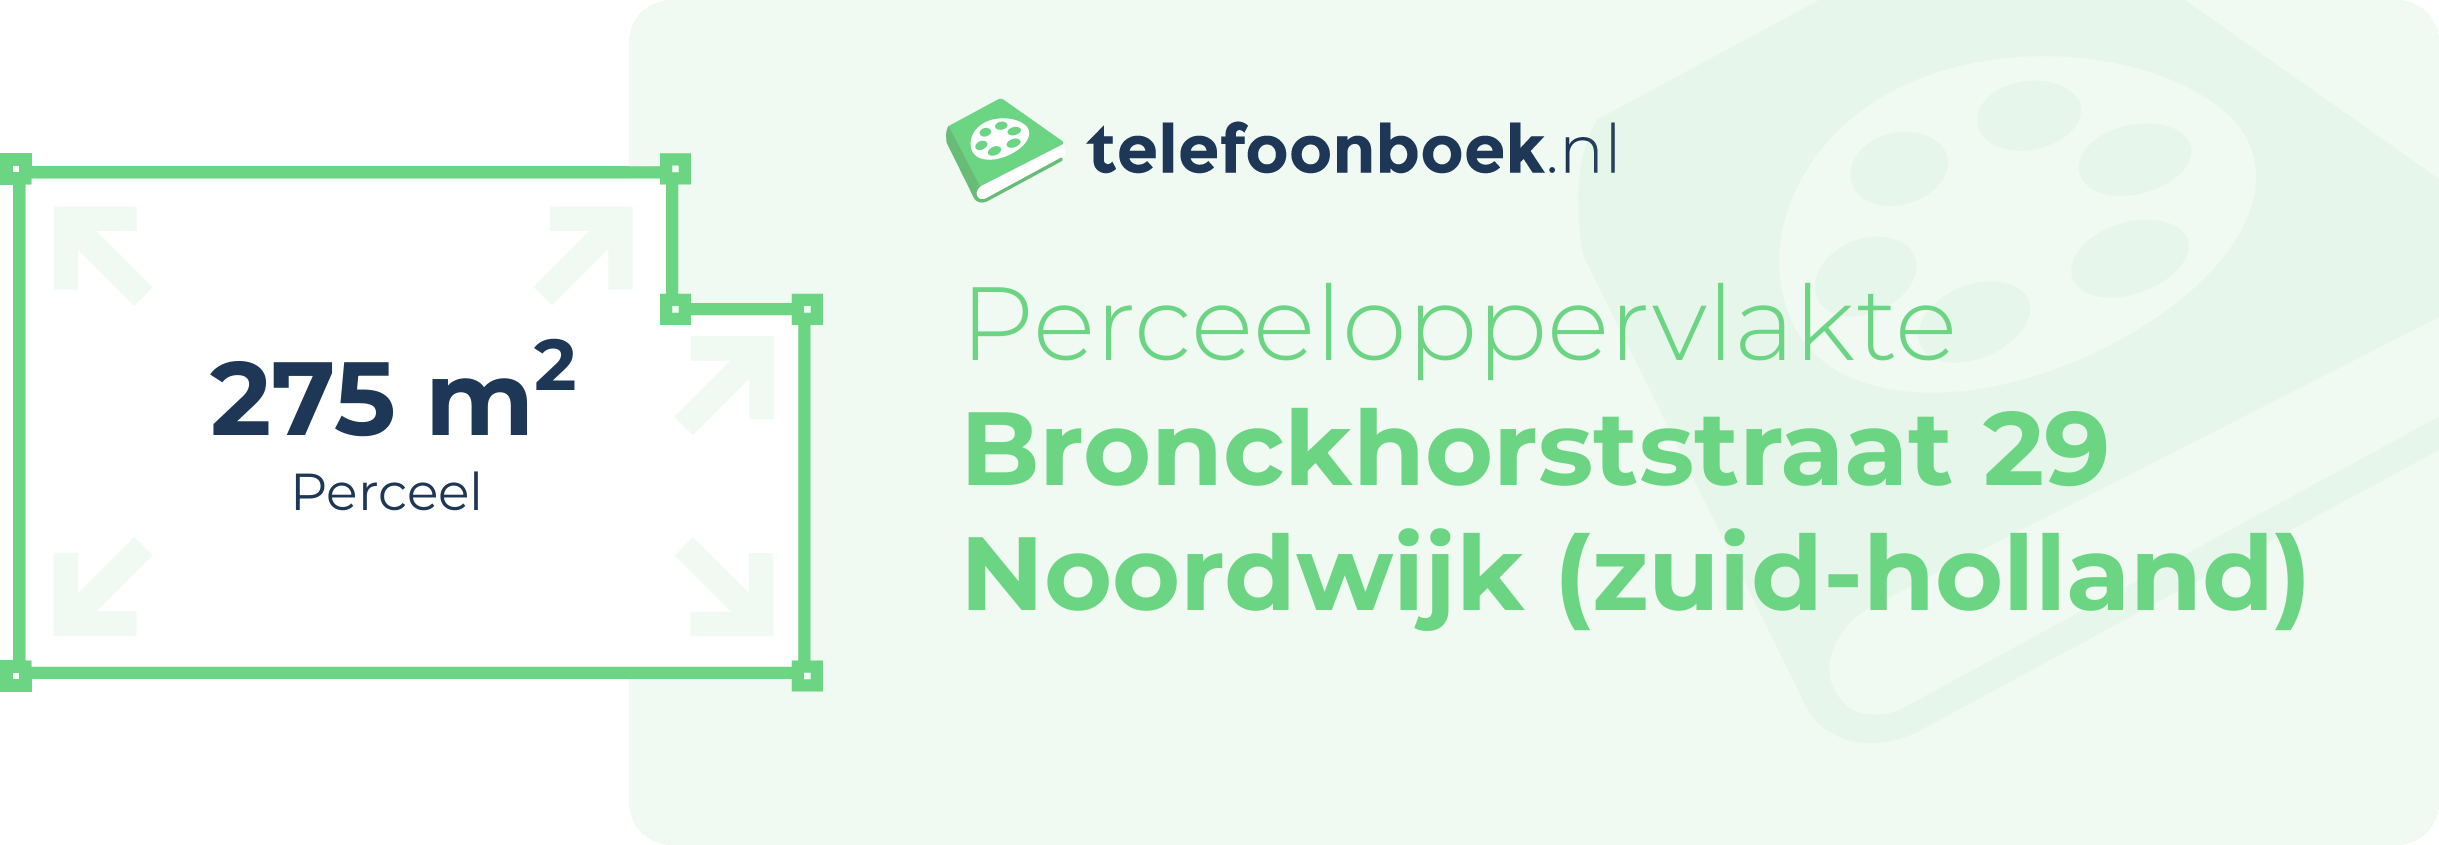 Perceeloppervlakte Bronckhorststraat 29 Noordwijk (Zuid-Holland)